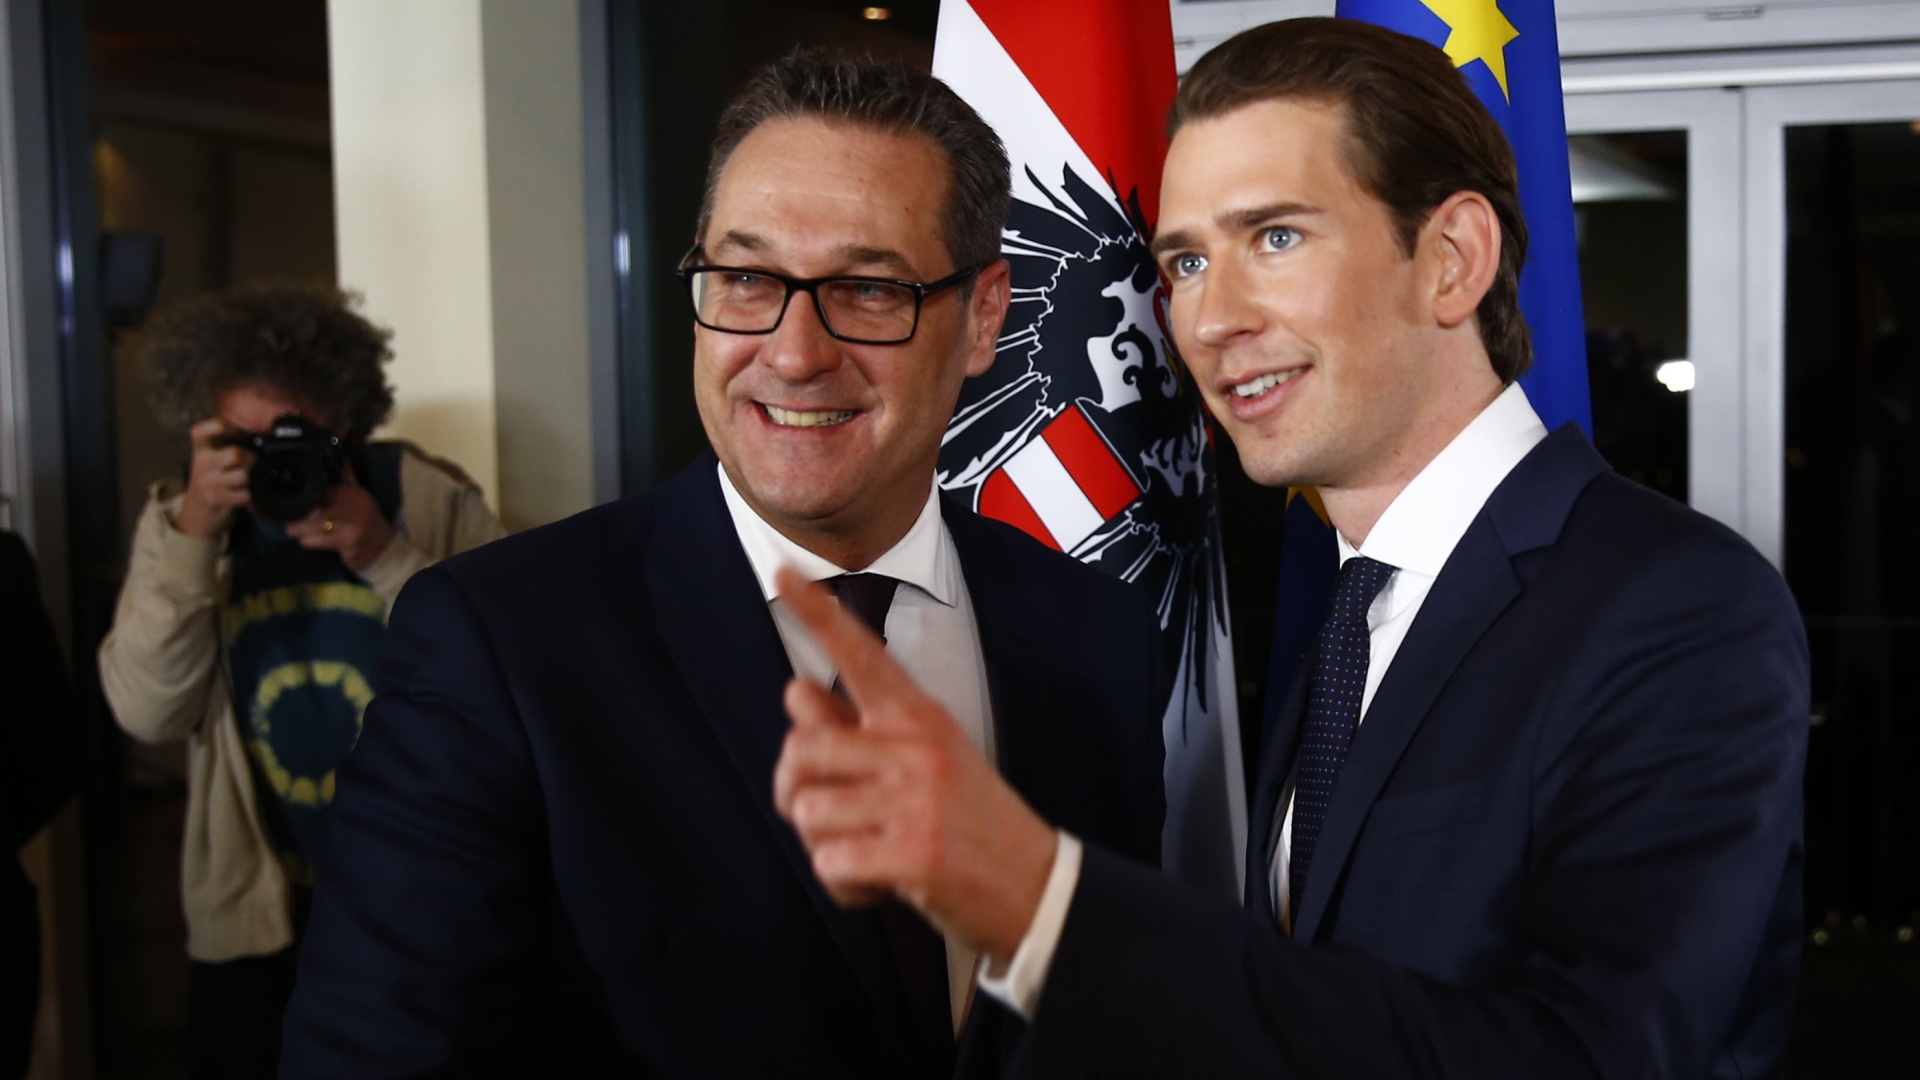 FPÖ-Chef Strache und ÖVP-Chef Kurz | Bildquelle: REUTERS